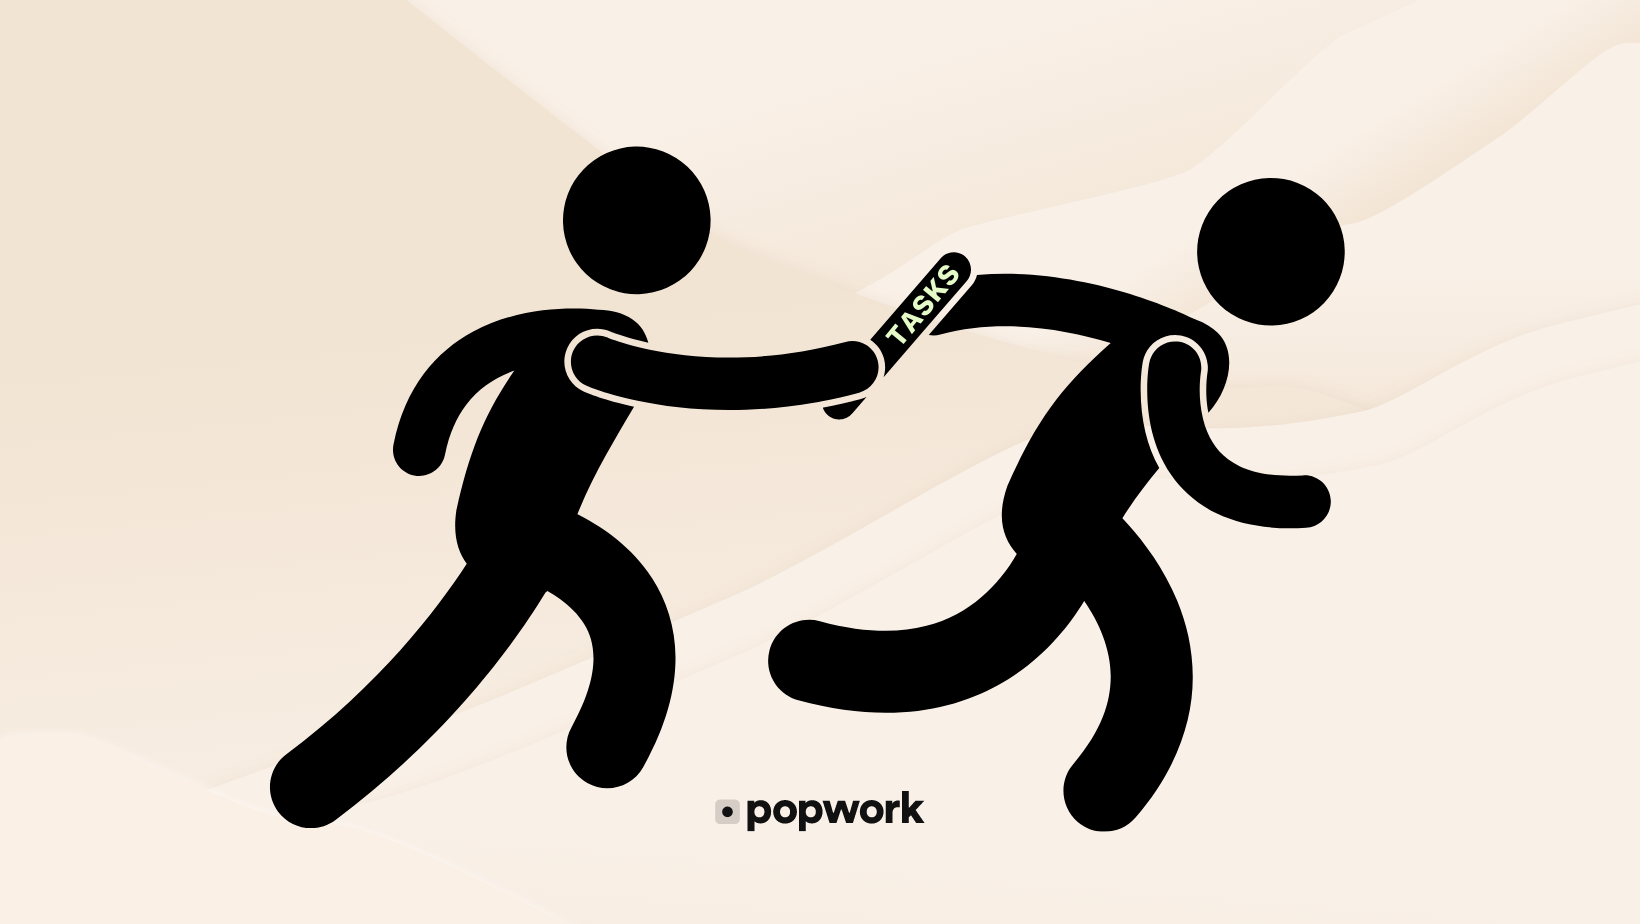 Delegate tasks at work - Popwork